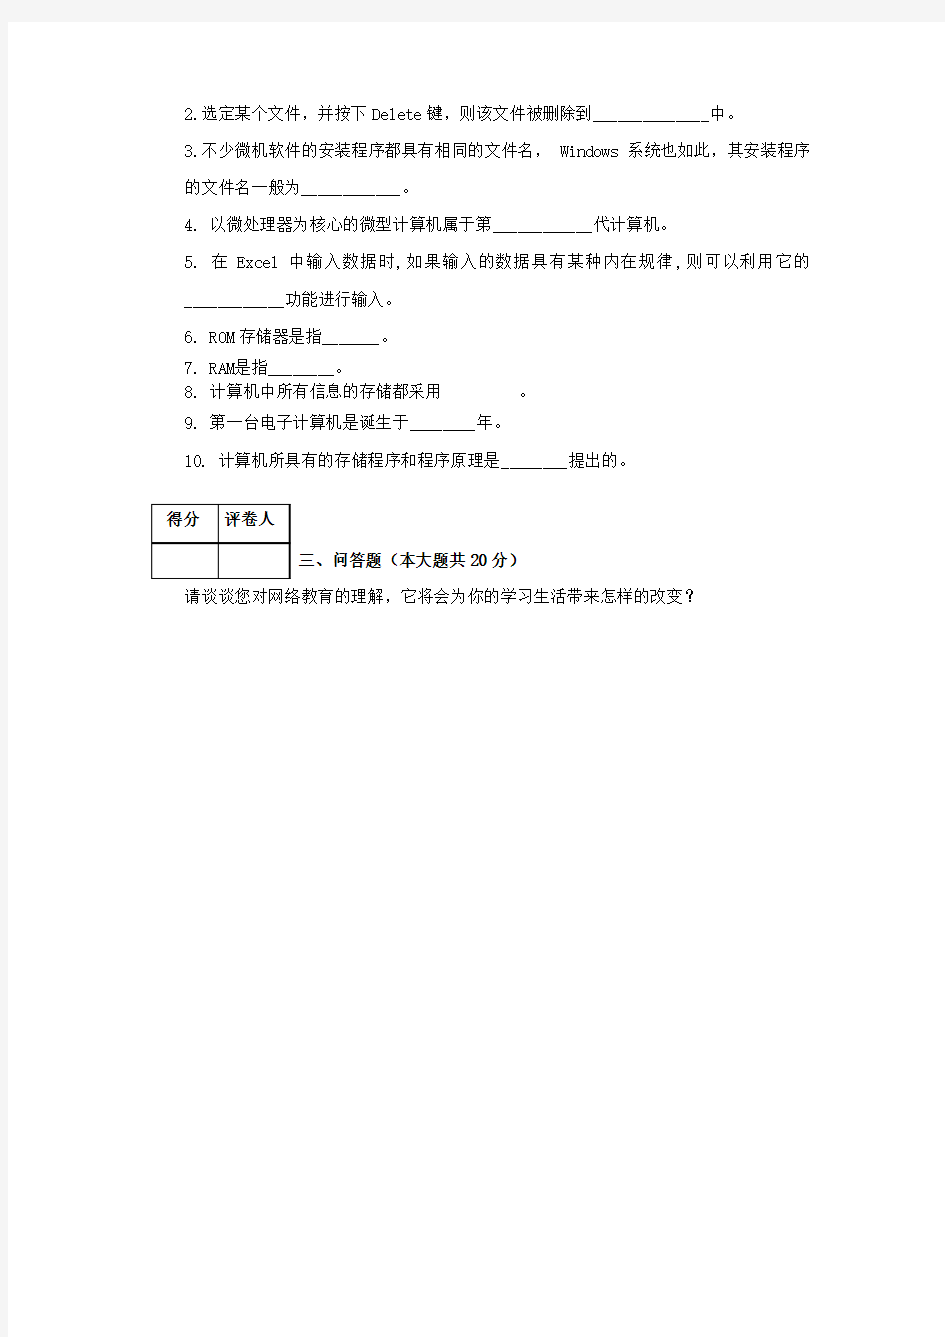 重庆大学网络教育学院(专科起点本科)2014年入学考试模拟题(二)及答案